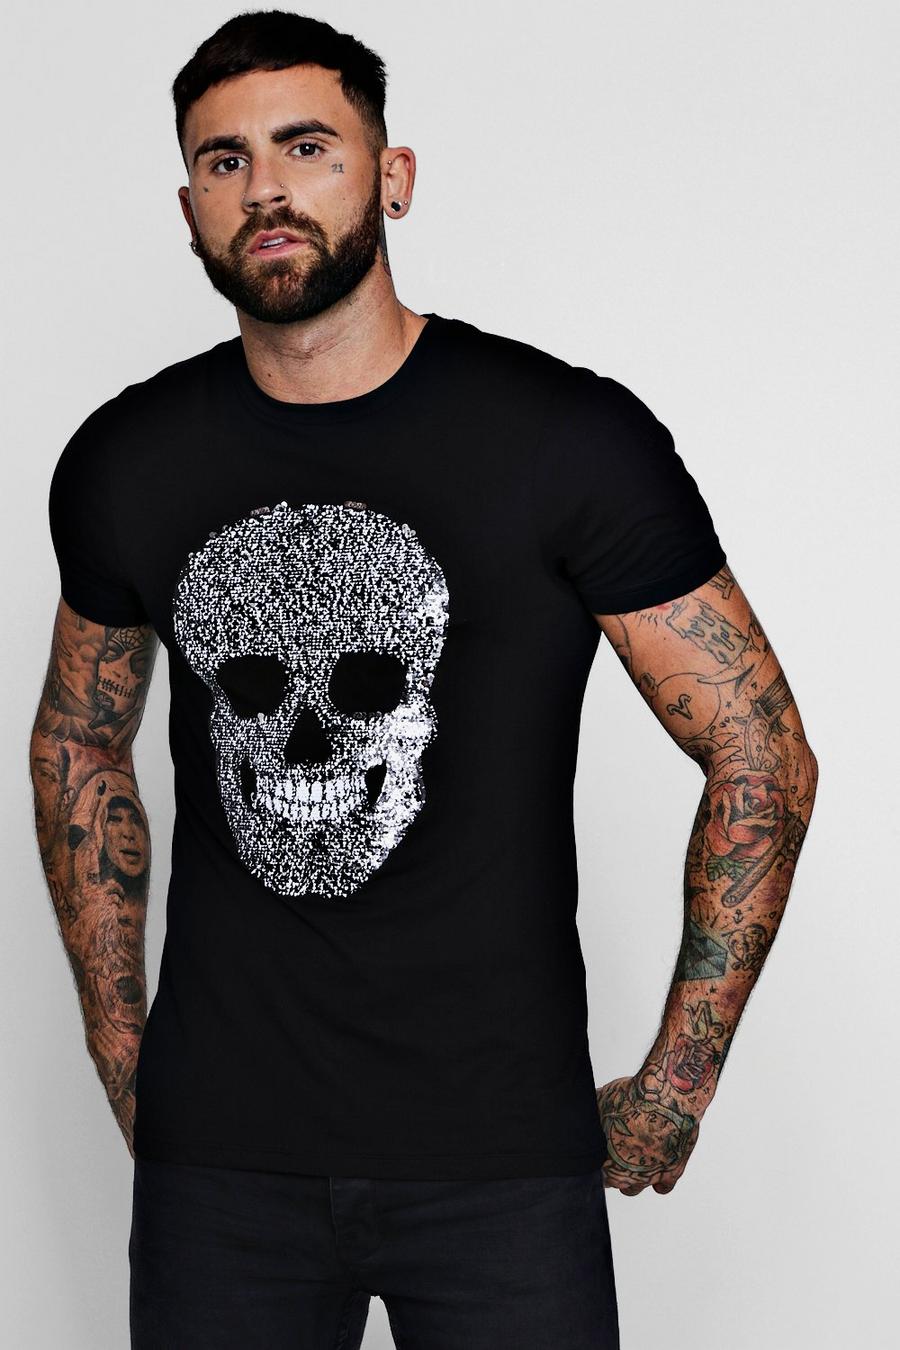 Tee-shirt homme avec tête de mort celtique